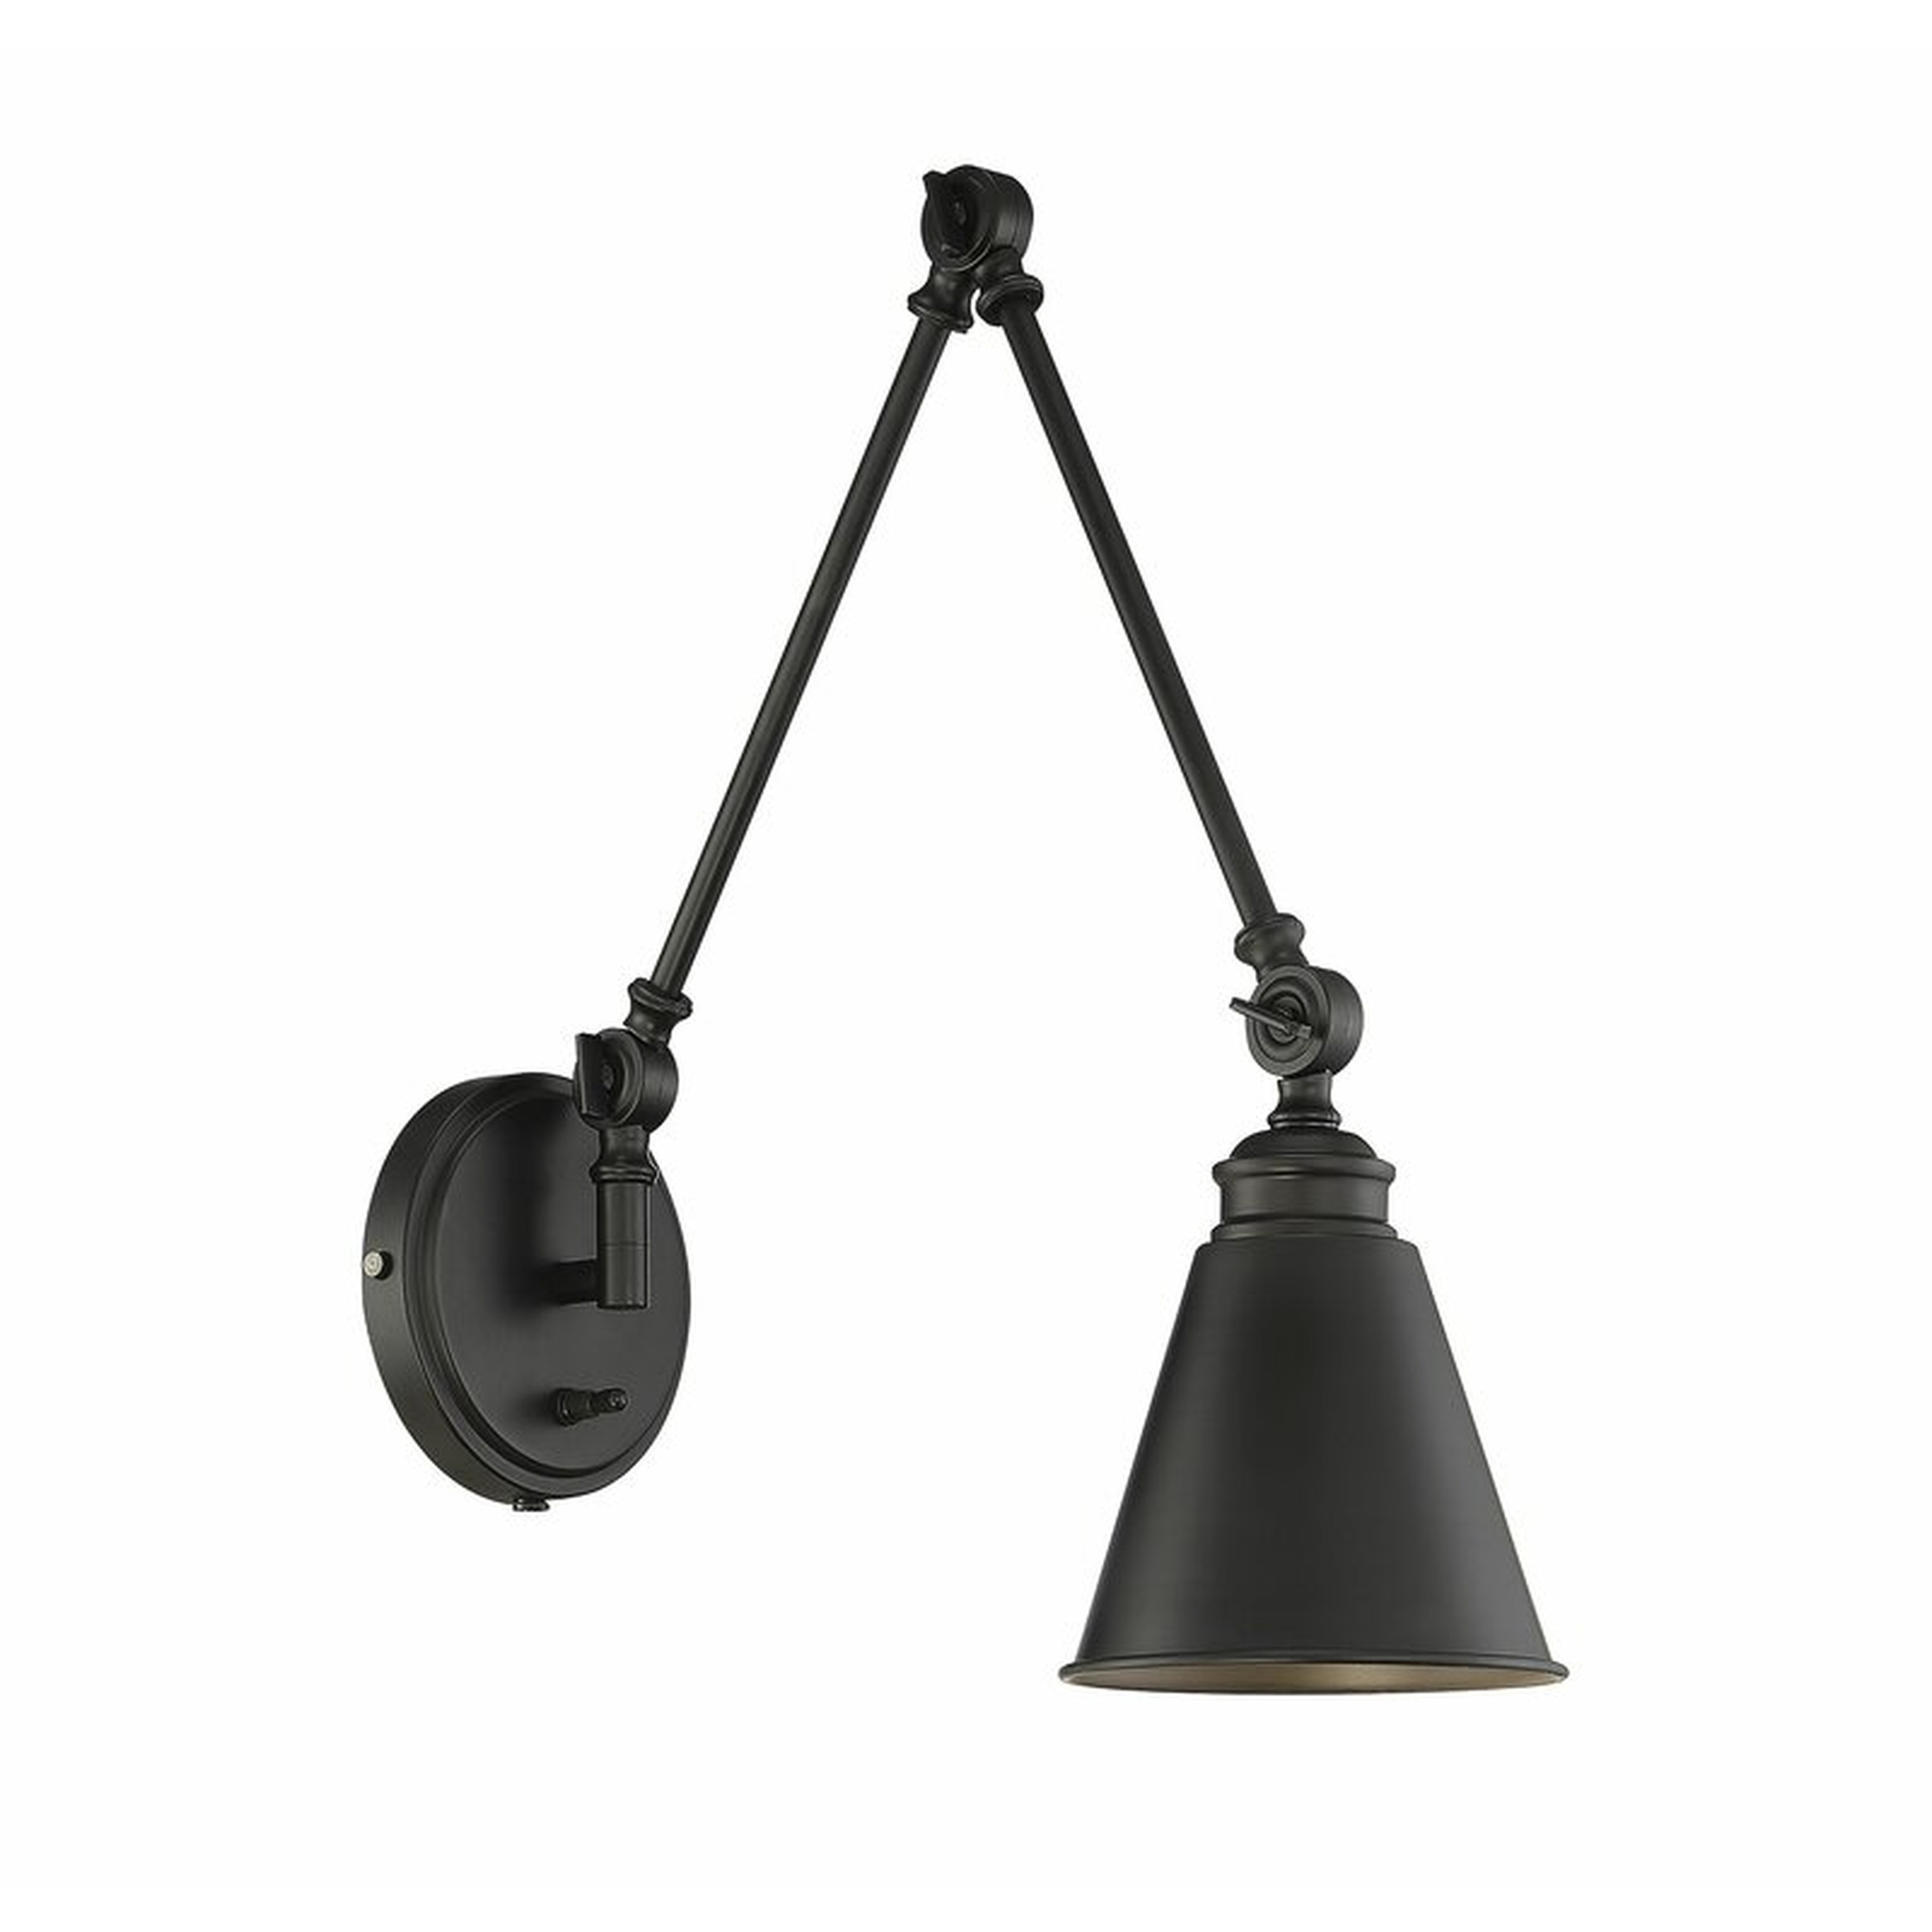 Waucoba Swing Arm Lamp - plug in - Wayfair